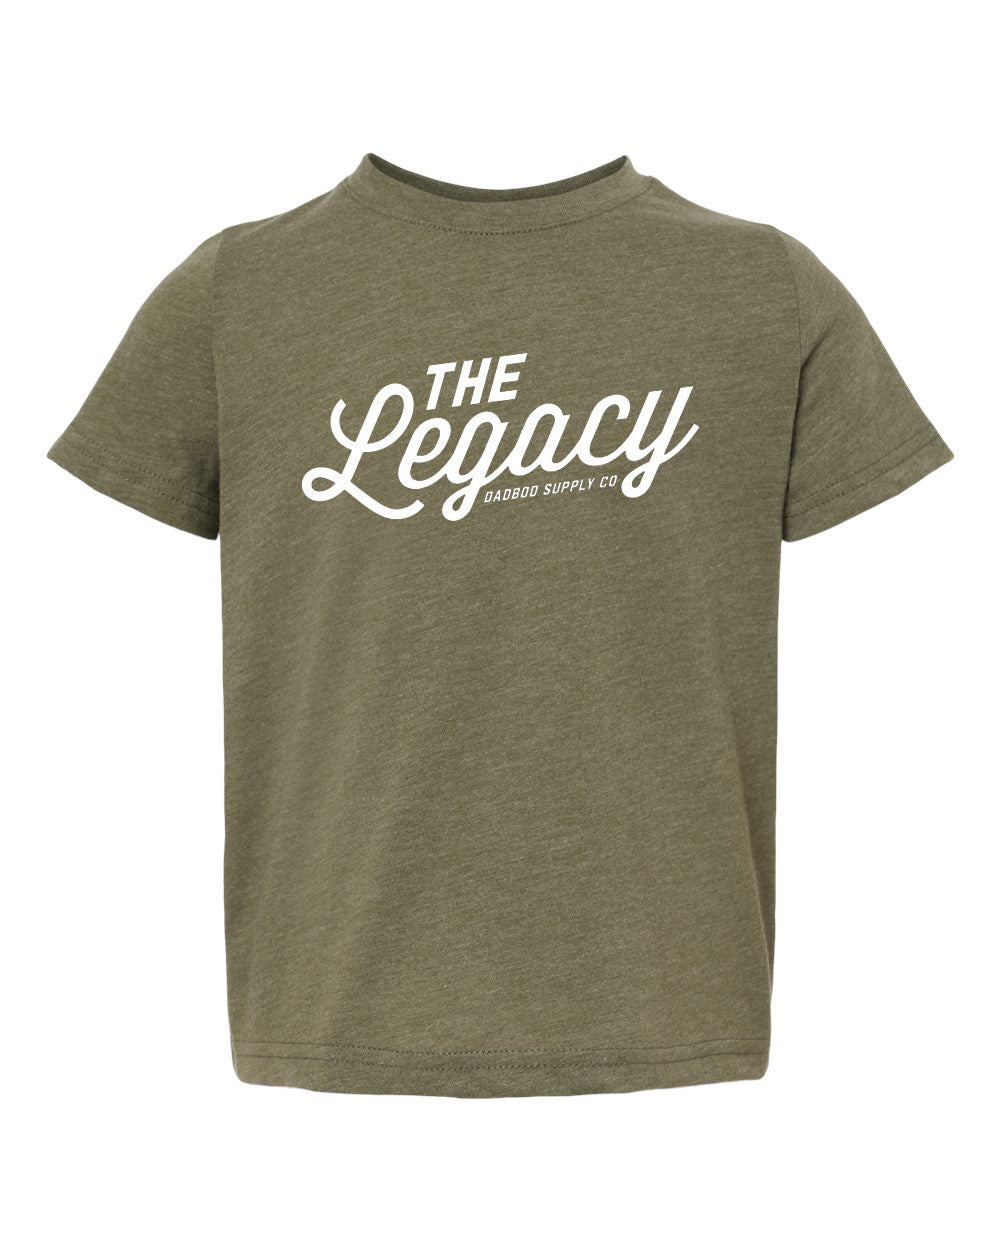 The Legacy Kids Shirt